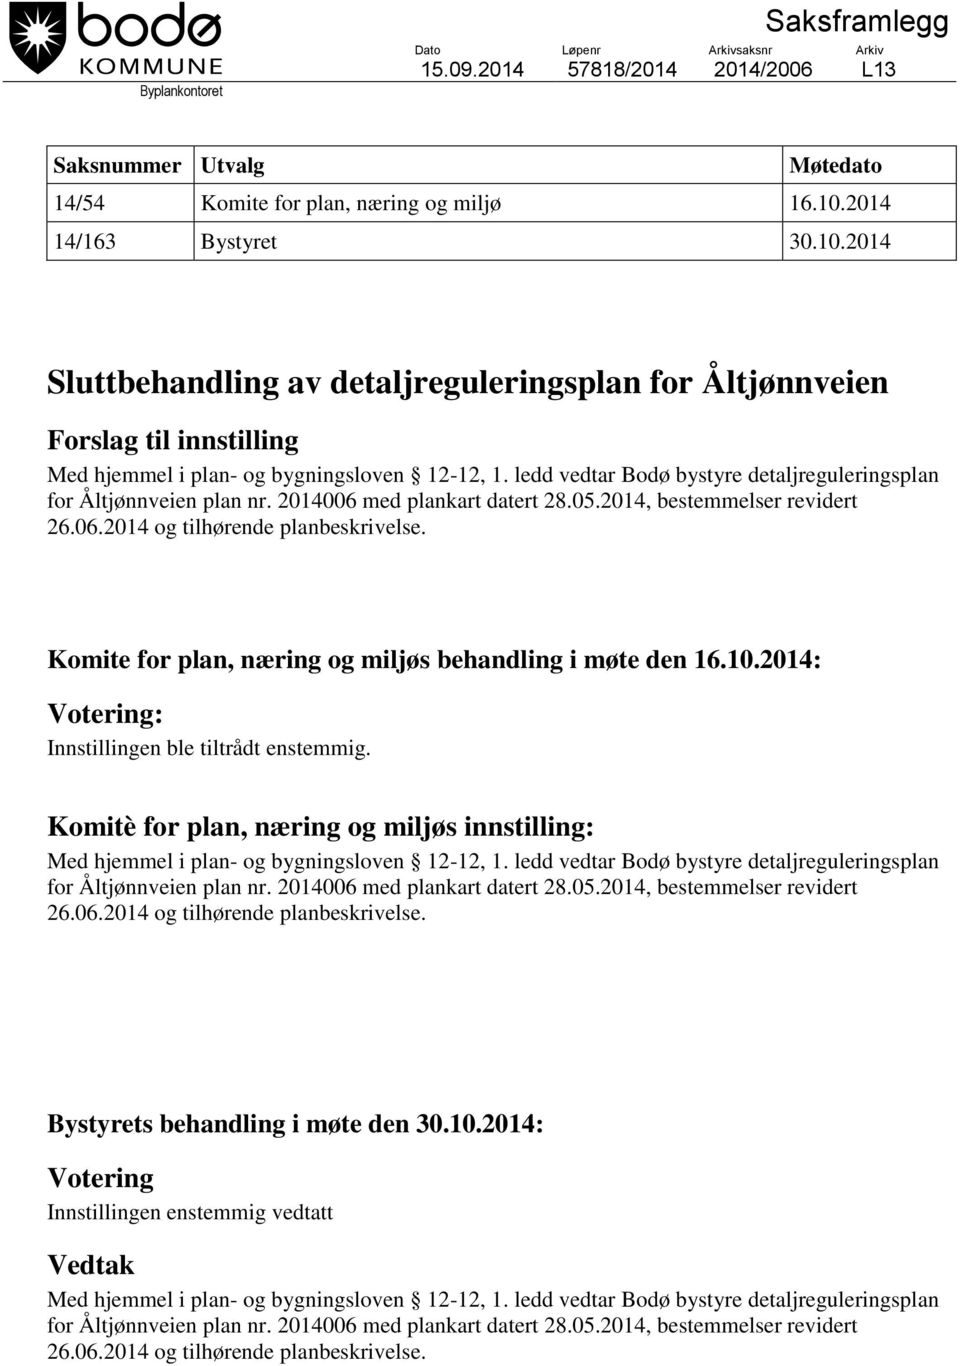 ledd vedtar Bodø bystyre detaljreguleringsplan for Åltjønnveien plan nr. 2014006 med plankart datert 28.05.2014, bestemmelser revidert 26.06.2014 og tilhørende planbeskrivelse.